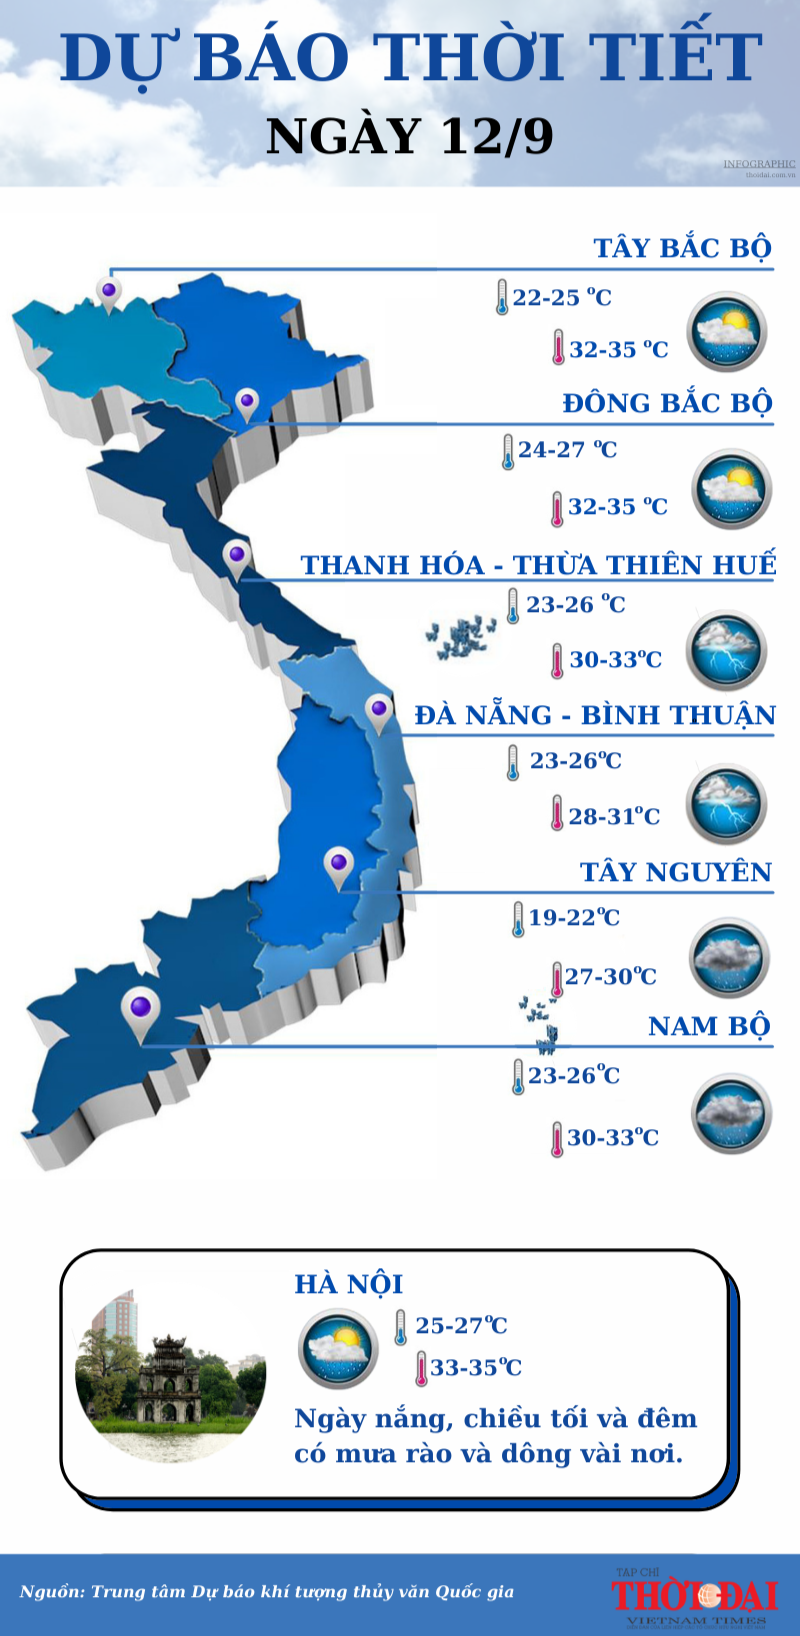 Dự báo thời tiết 12/9: Trung Bộ mưa rất to, cảnh báo lũ quét và sạt lở đất